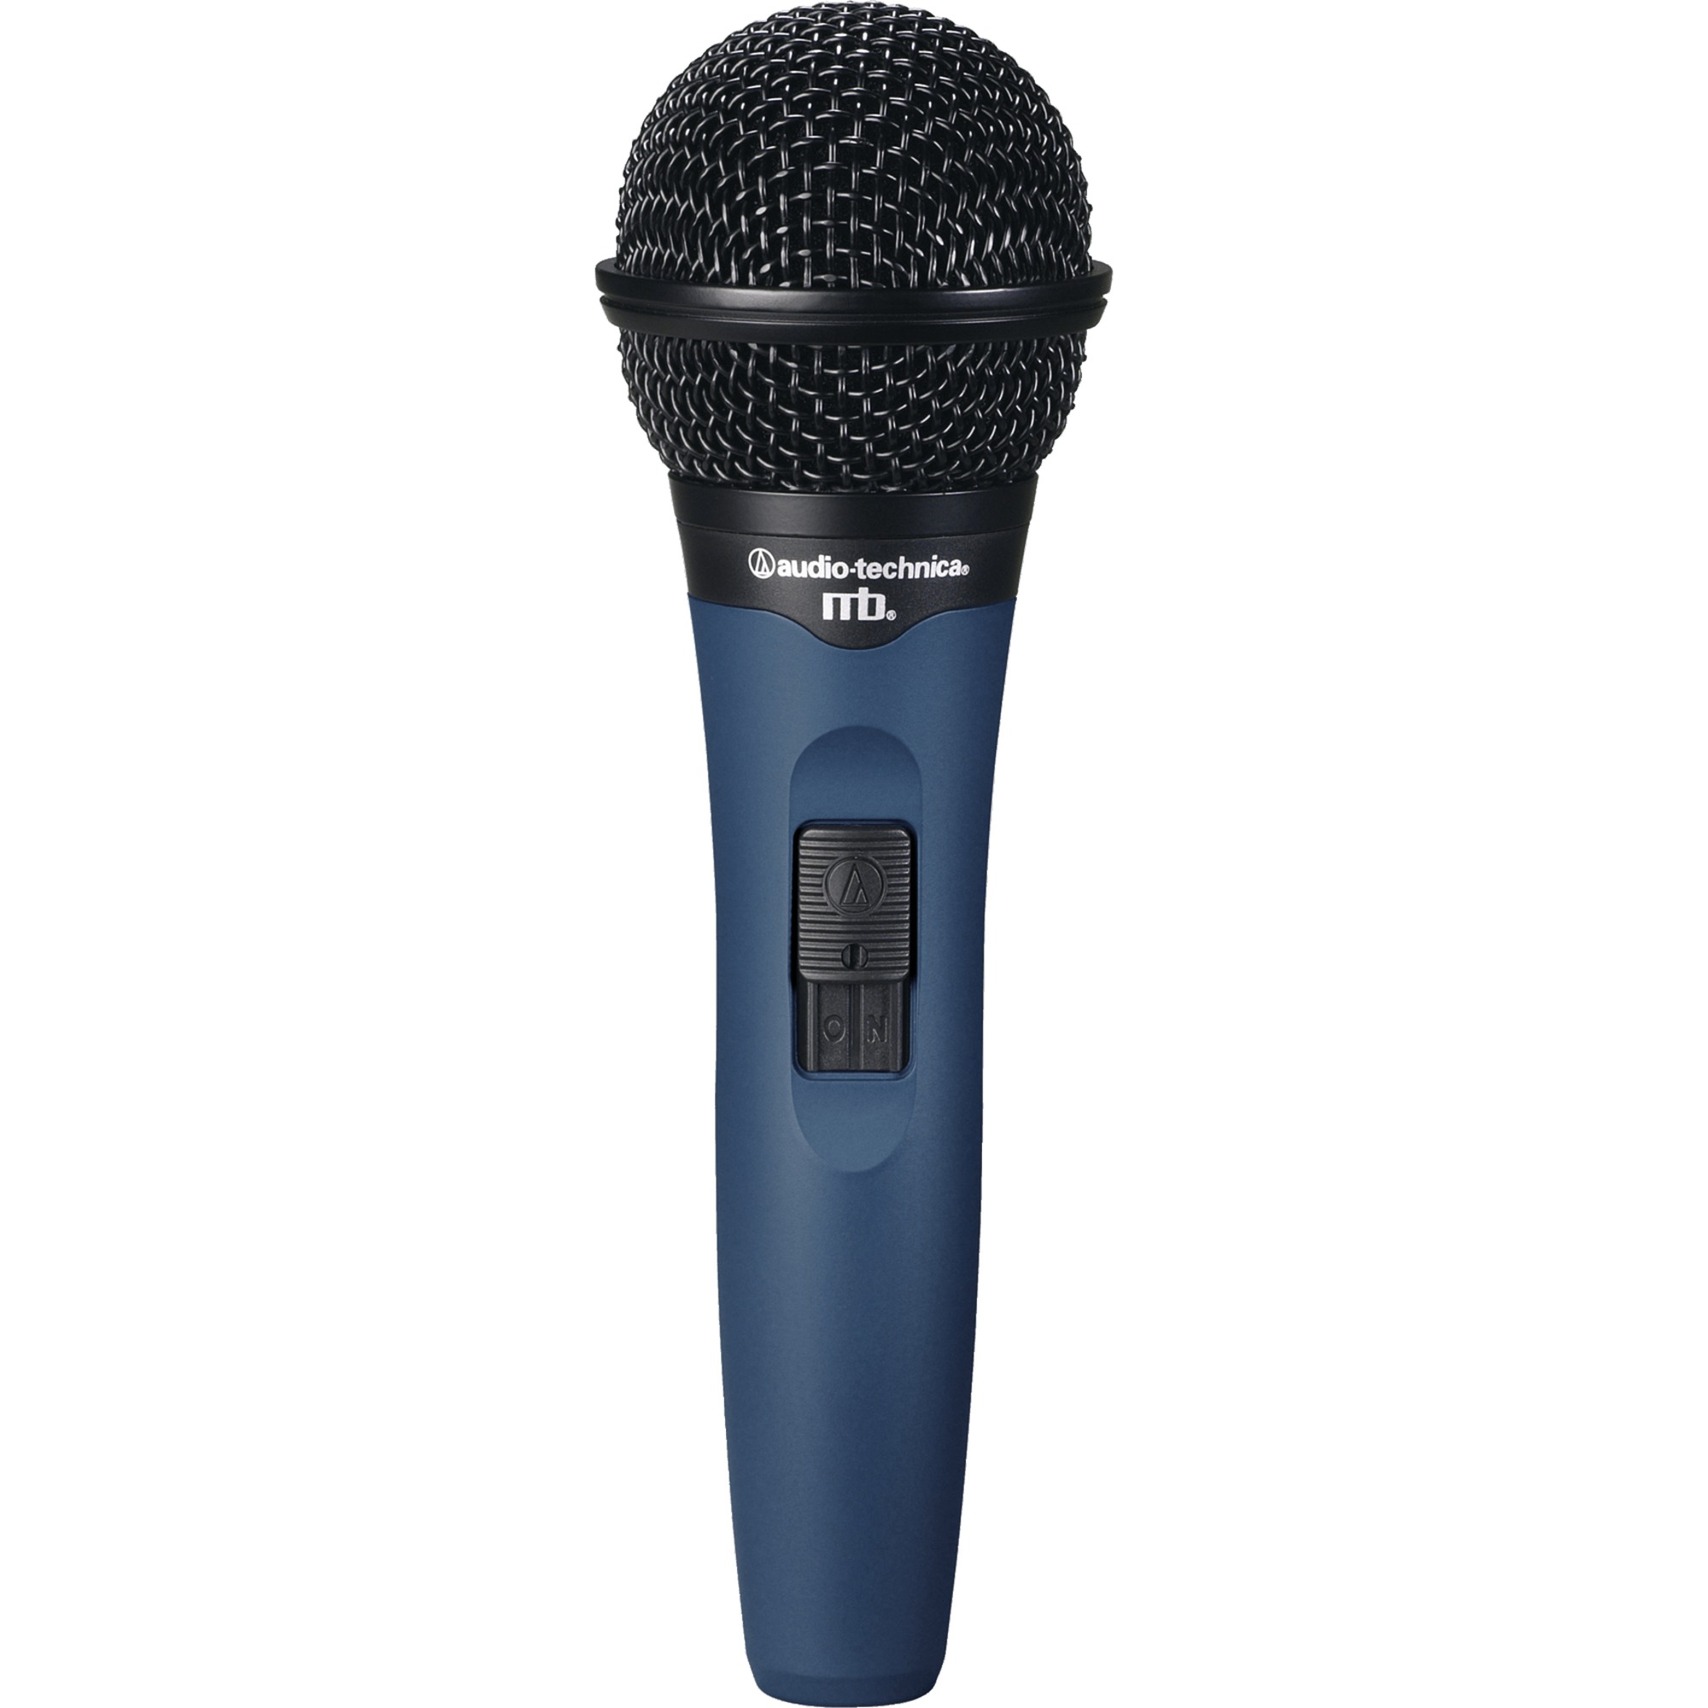 Image of Alternate - MB1k, Mikrofon online einkaufen bei Alternate